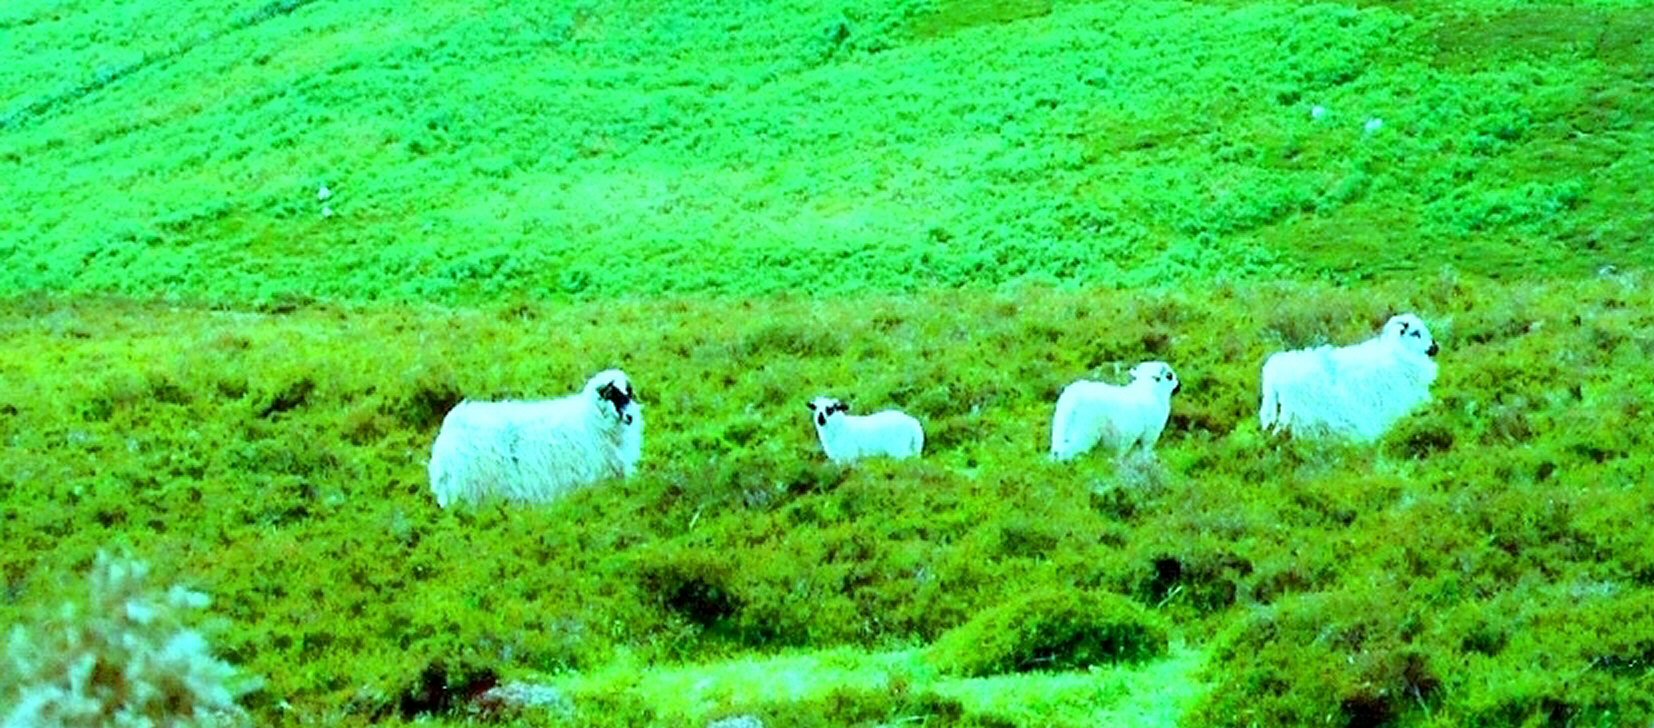 Irish Sheep by KJ Hannah Greenberg